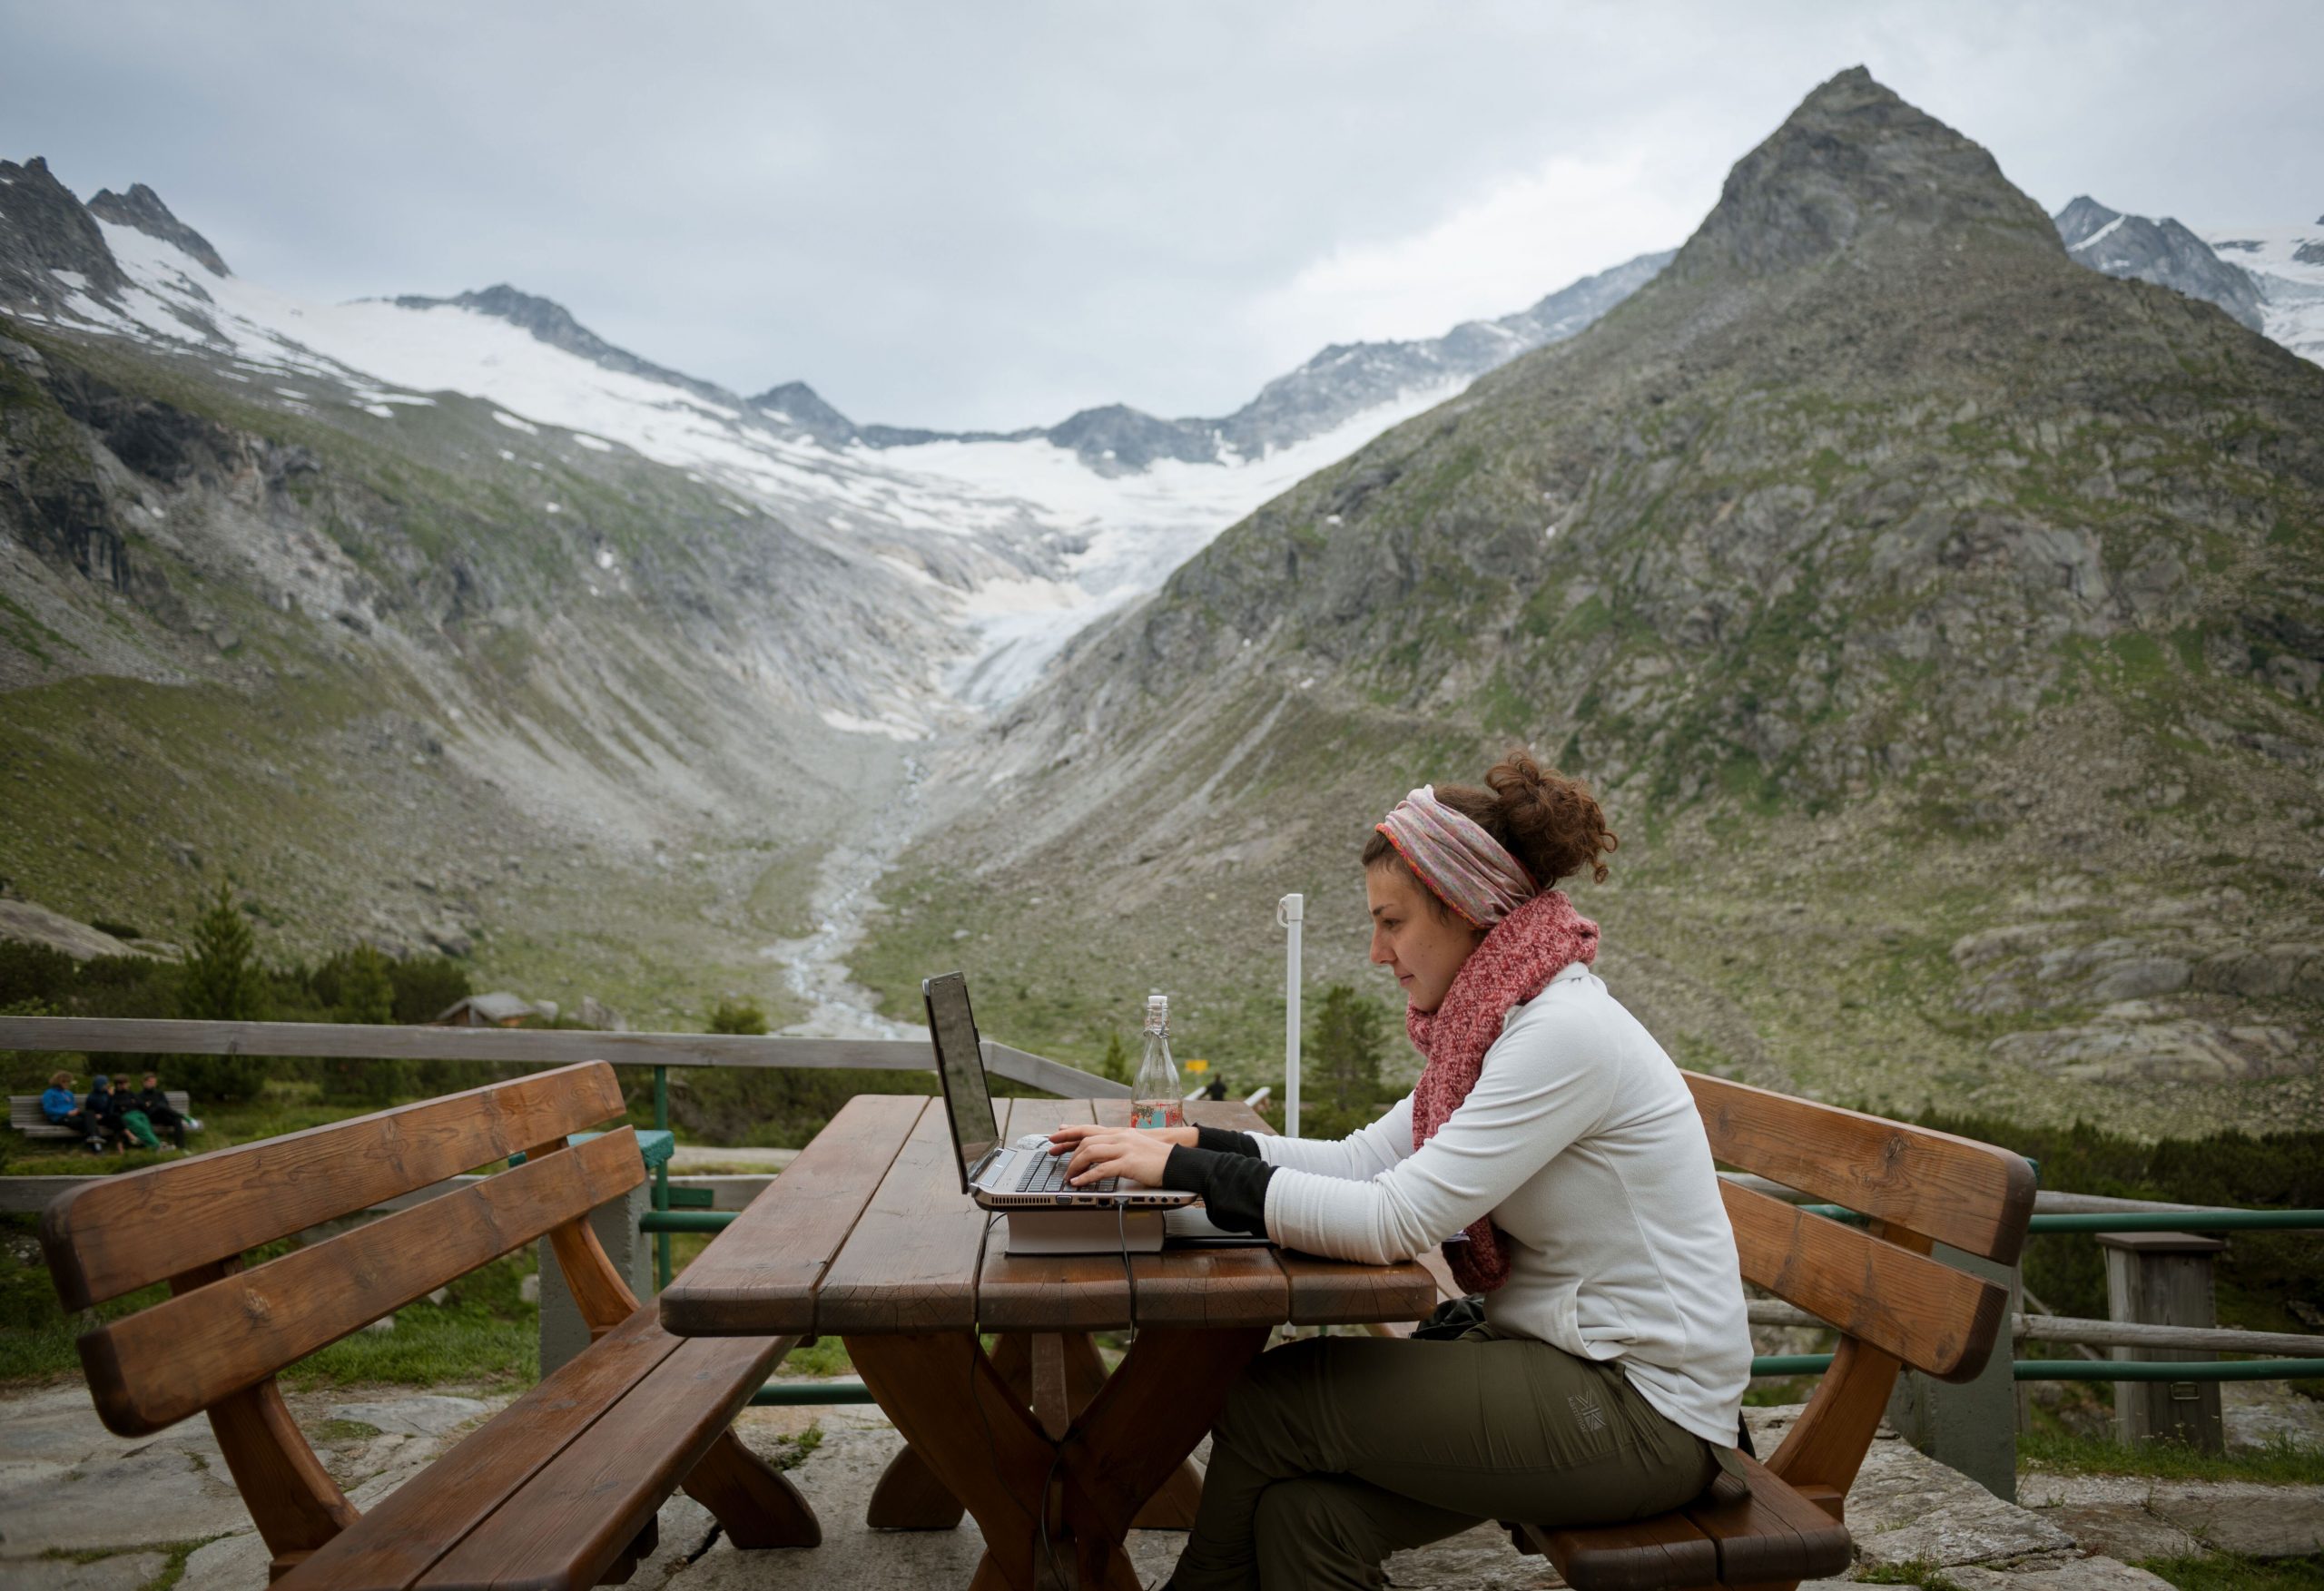 Funktioniert Coworkation im Alpenraum? Eine aktuelle Studie zeigt hohes Potenzial